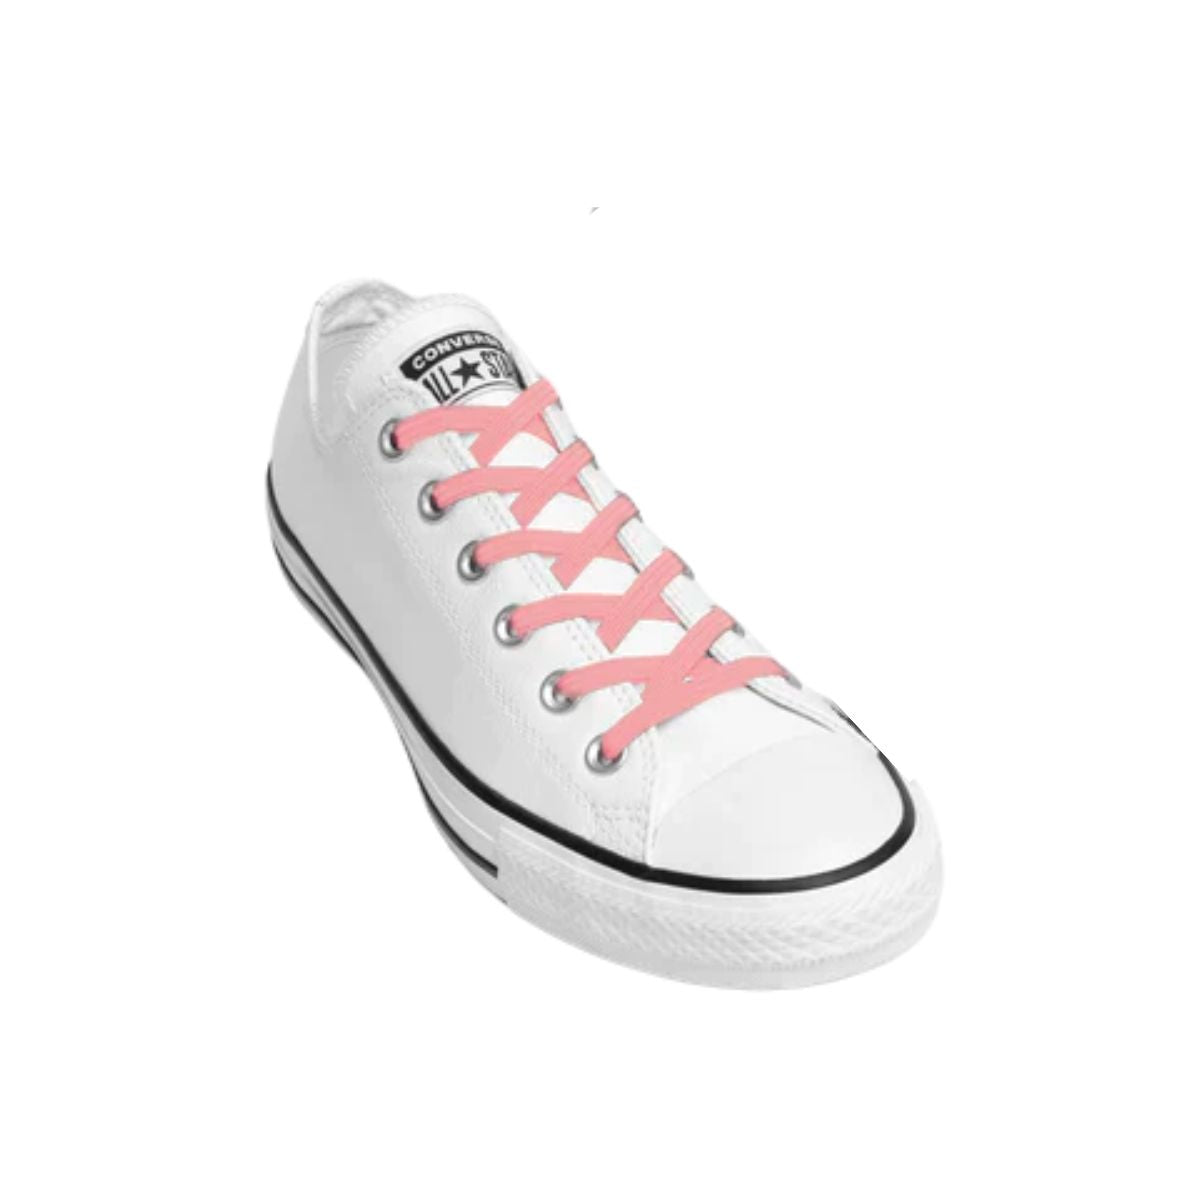 Replacement for Shoe Laces Pink No-Tie Shoelaces - Kicks Shoelaces